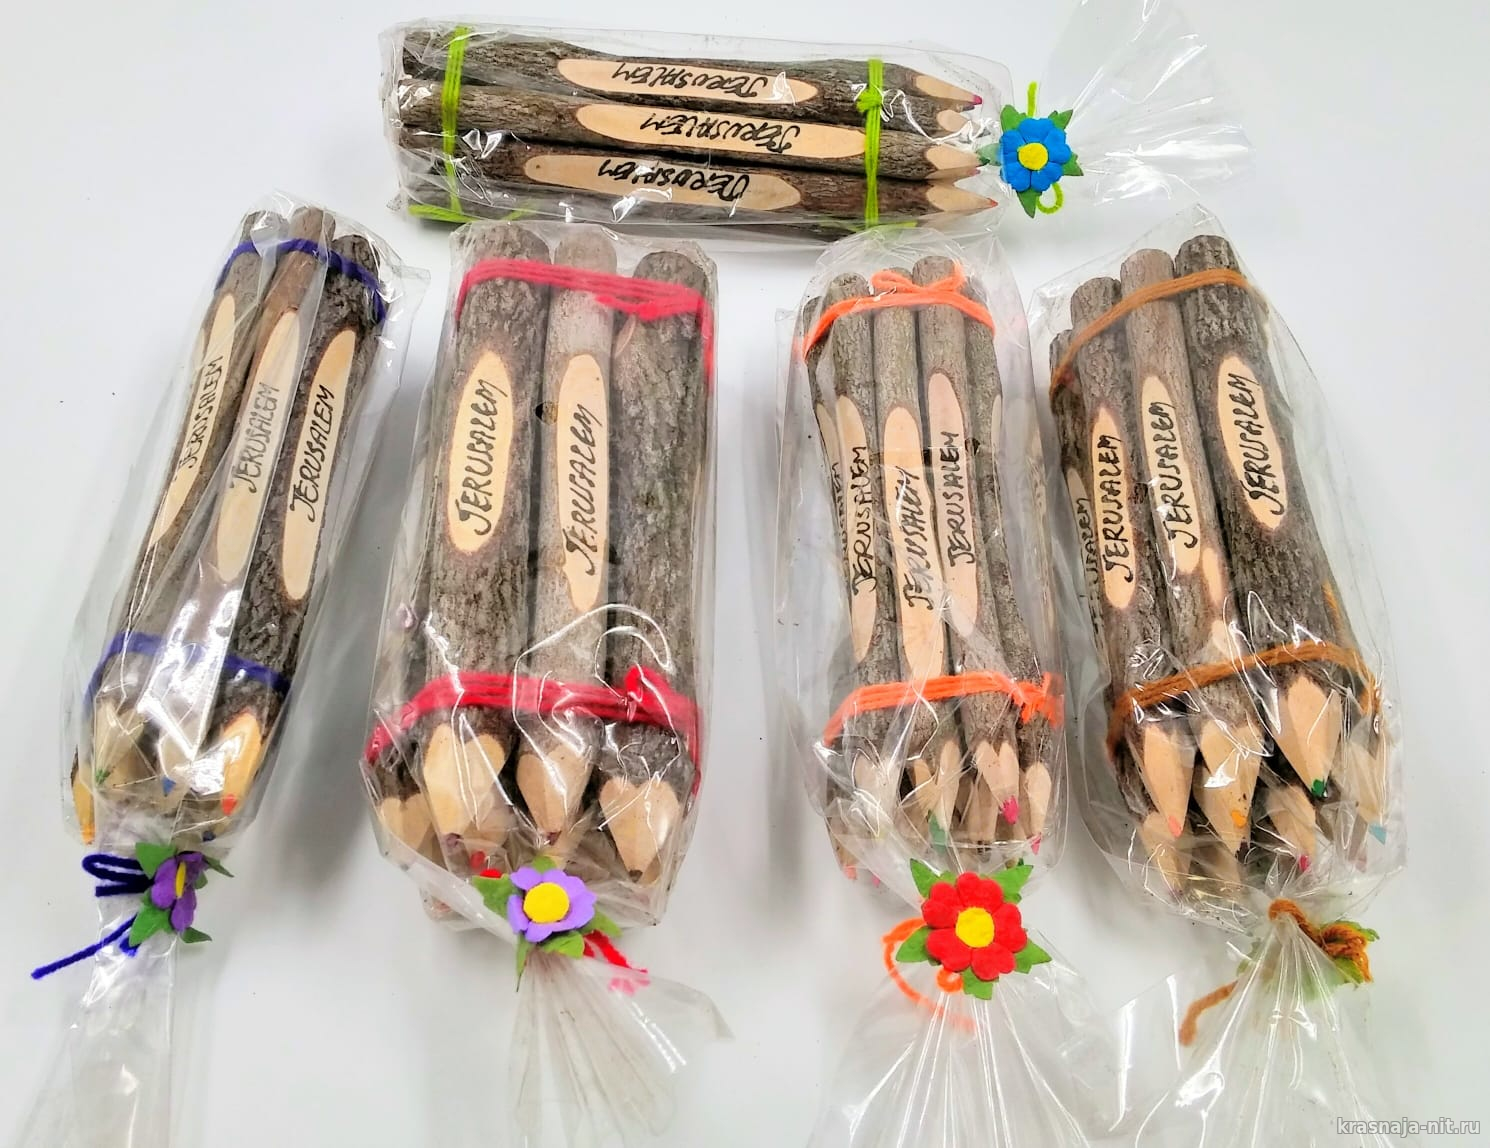 Набор карандашей в форме дерева - Иерусалим, Сувениры и подарки из Израиля